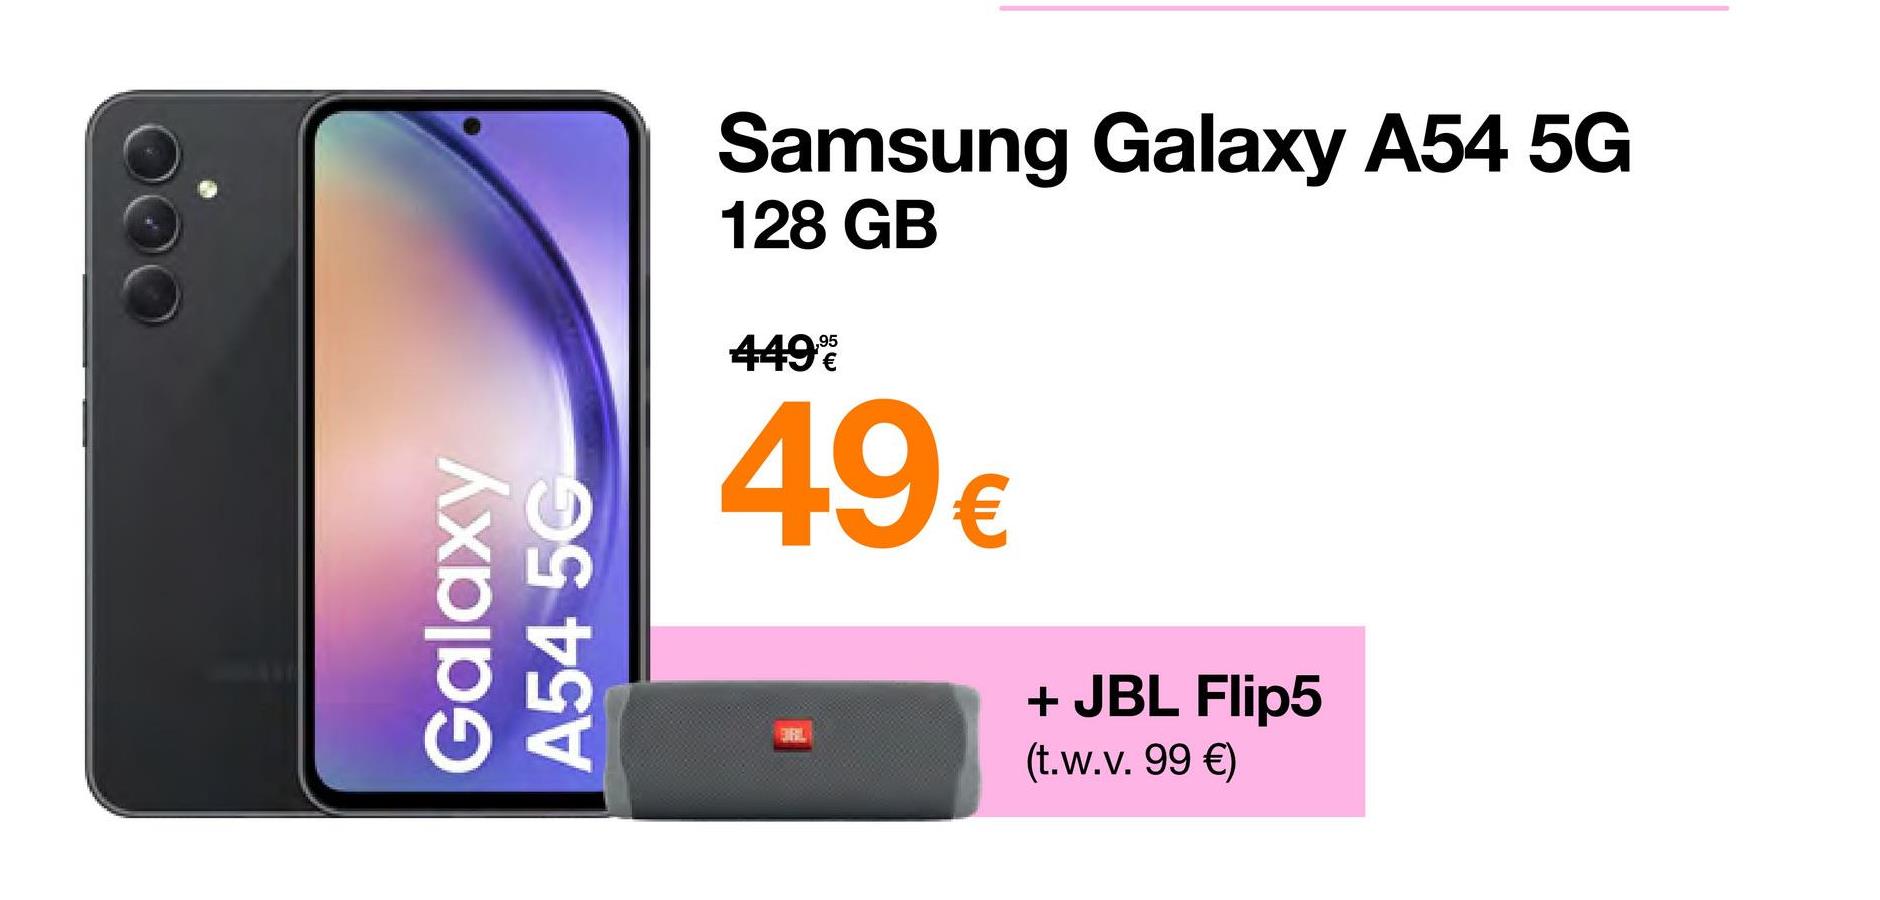 Galaxy
A54 5G
Samsung Galaxy A54 5G
128 GB
449%
49€
+ JBL Flip5
(t.w.v.99 €)